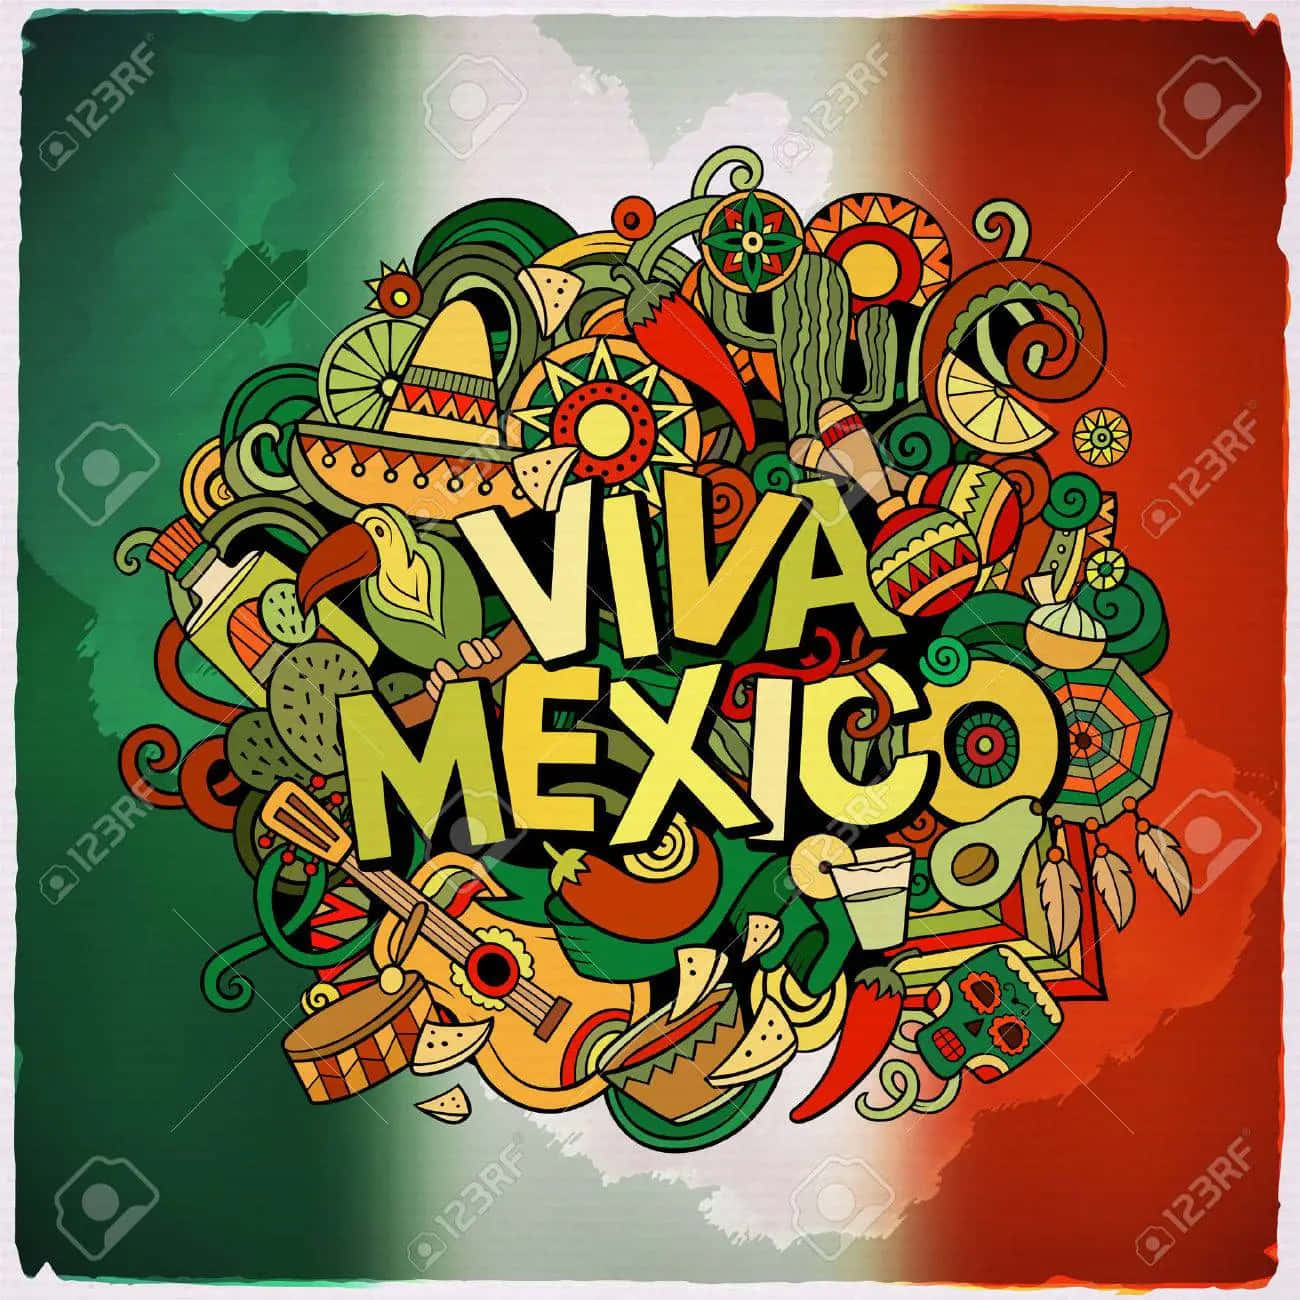 Fejrviva Mexico! Wallpaper